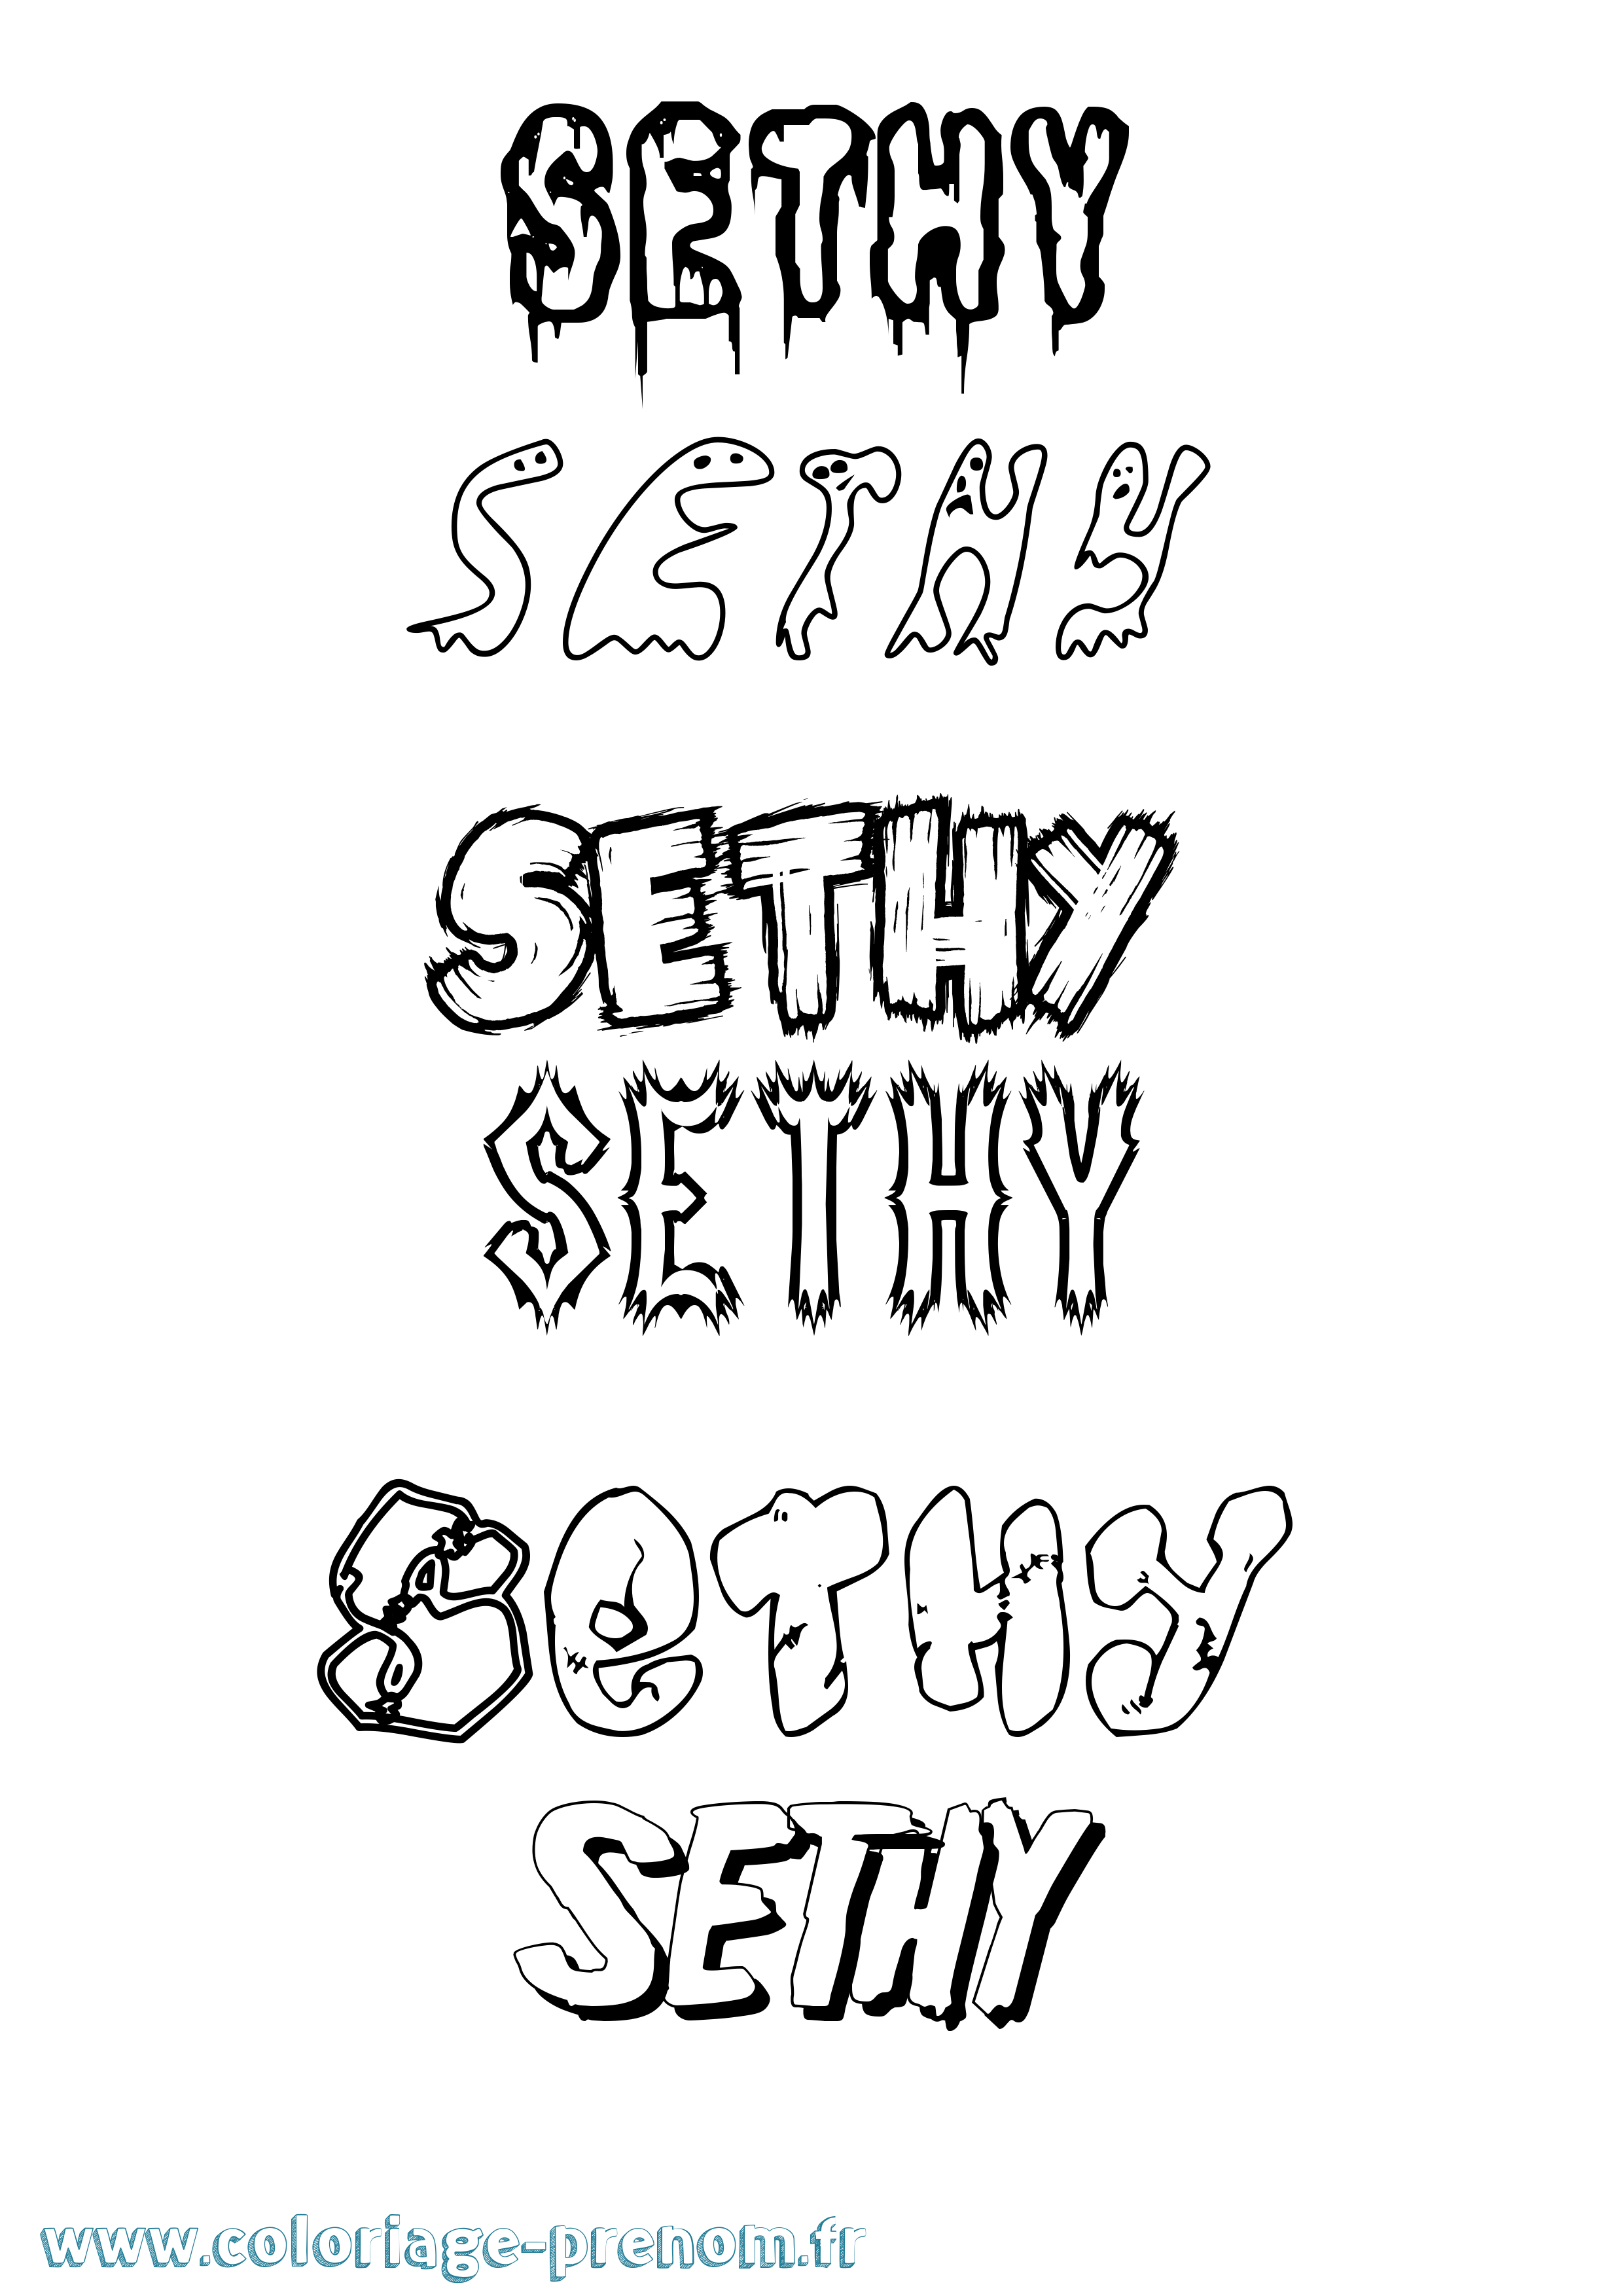 Coloriage prénom Sethy Frisson